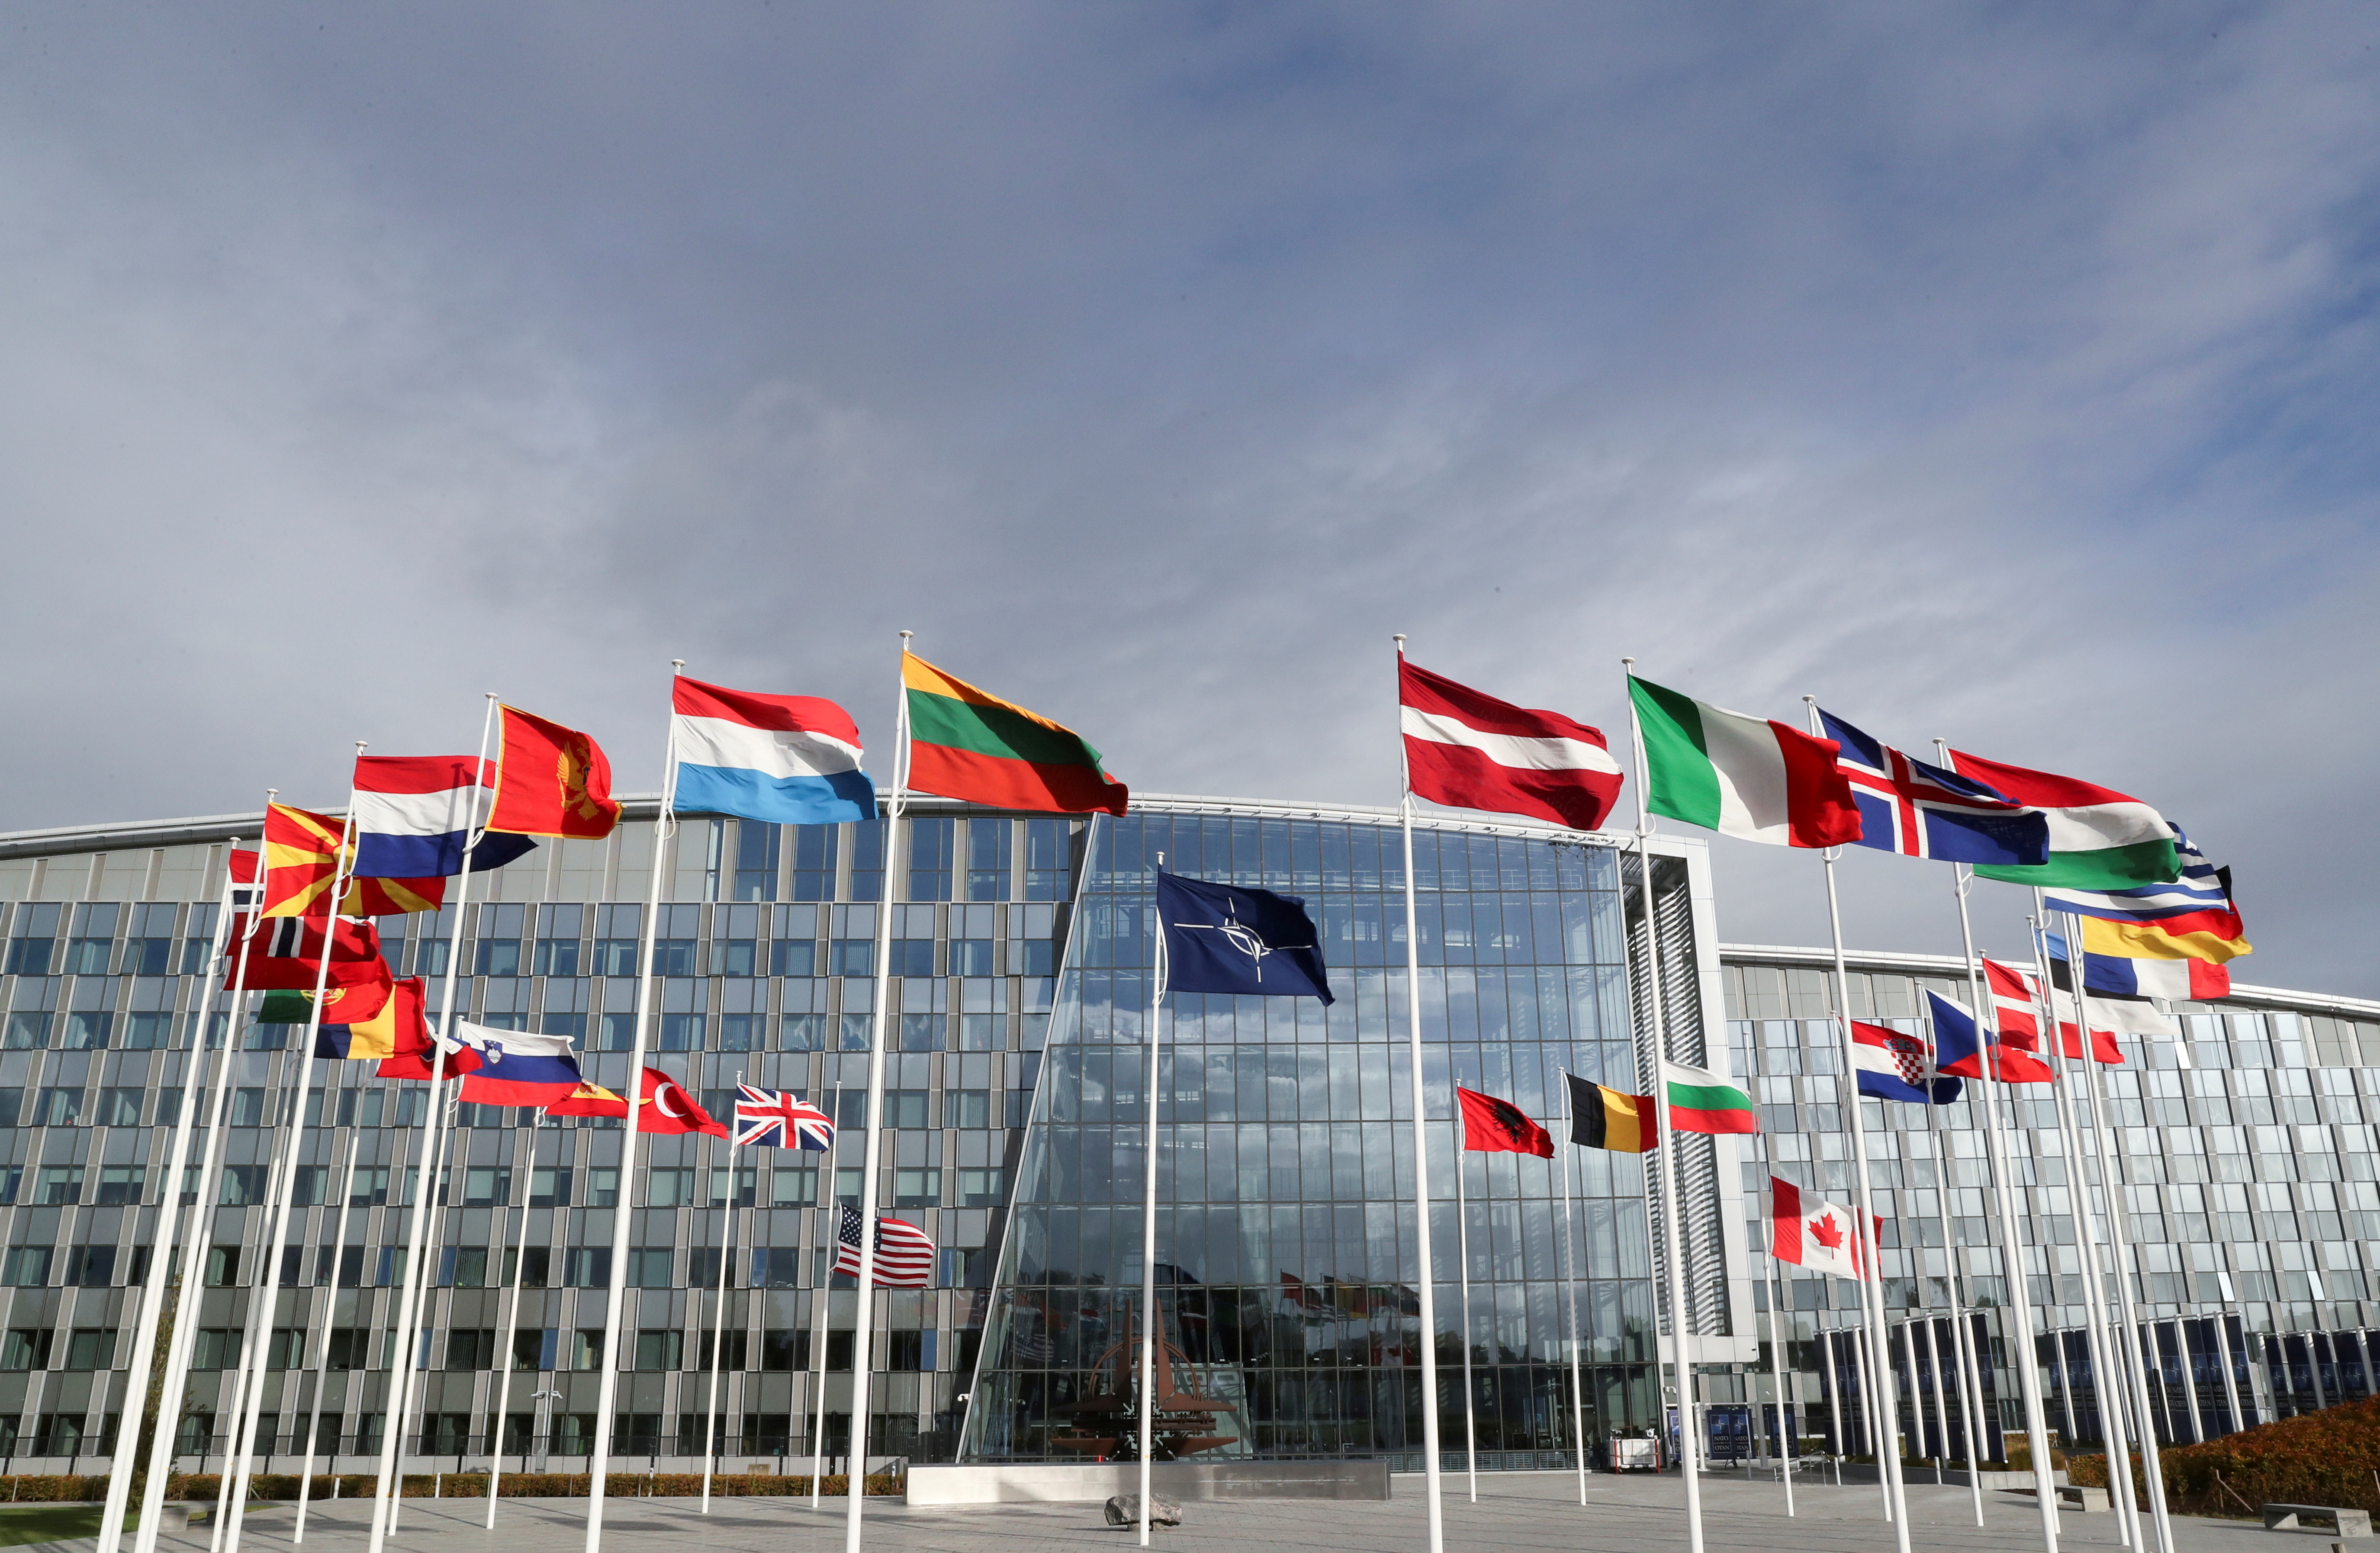 Знамињата се веат пред седиштето на Алијансата пред состанокот на министрите за одбрана на НАТО, во Брисел, Белгија, 21 октомври 2021 година. REUTERS/Pascal Rossignol/File Photo